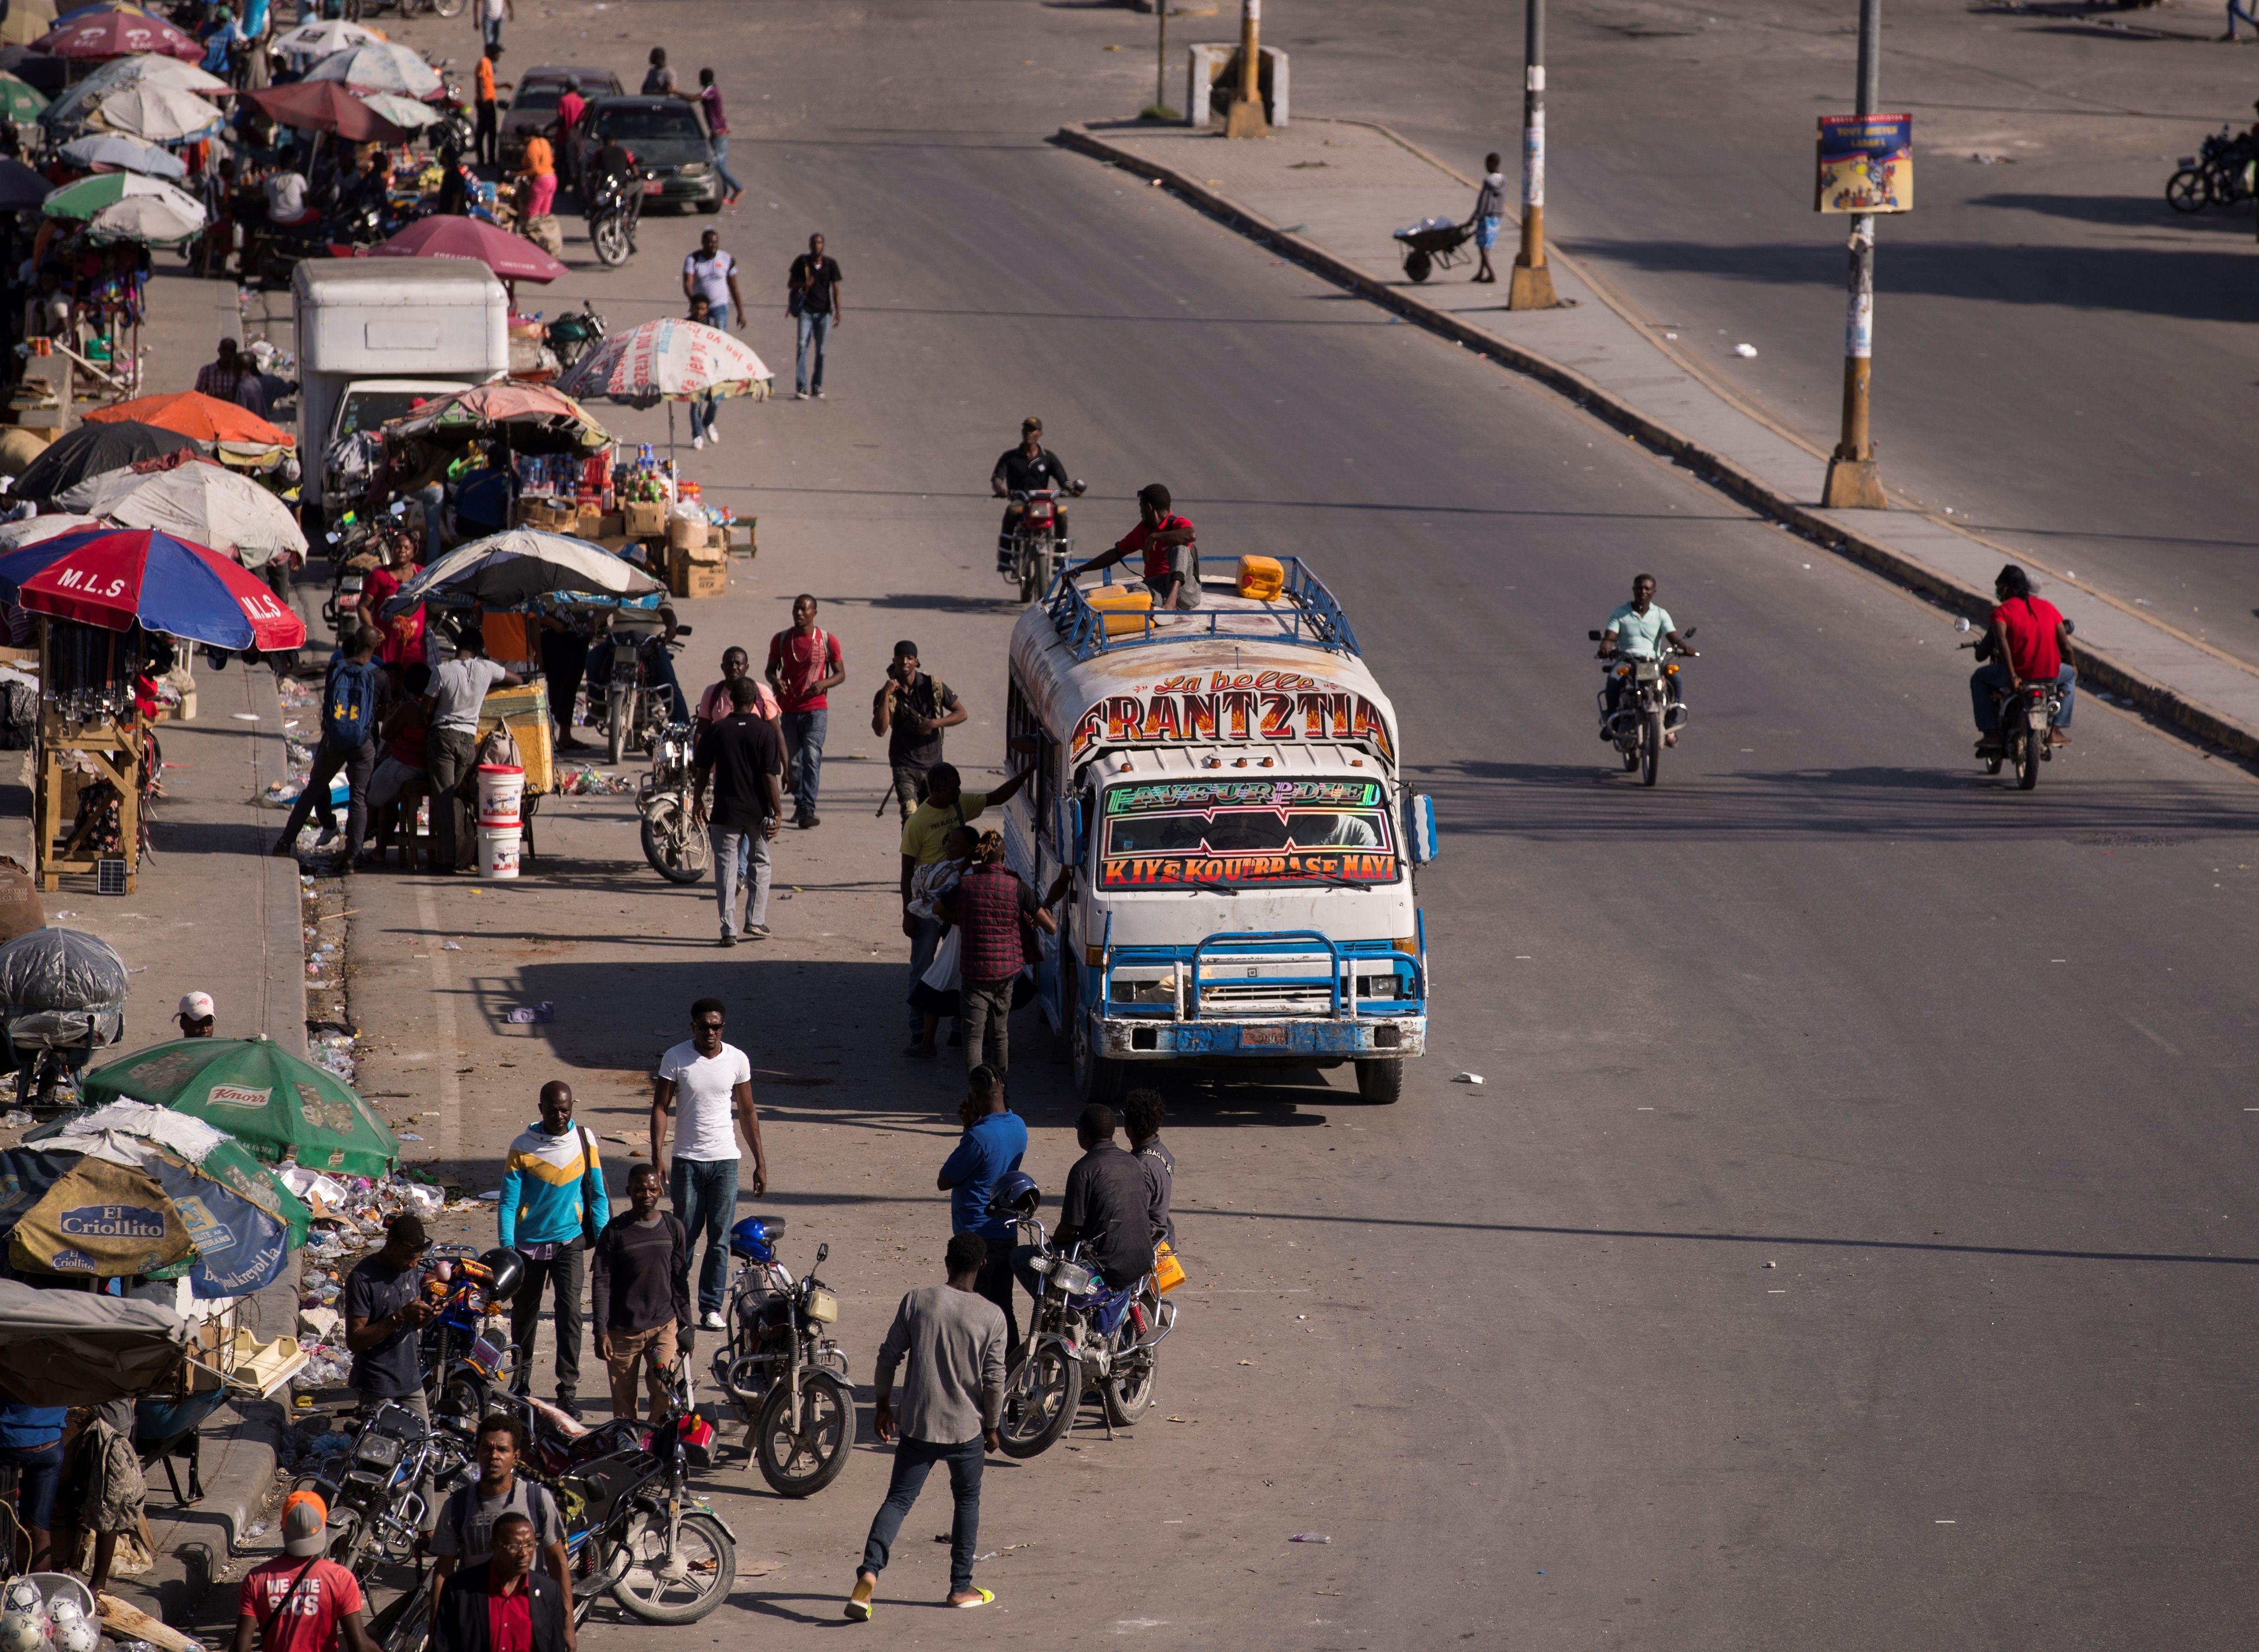 Haití vive tercera jornada de paro con aumento actividad en la capital